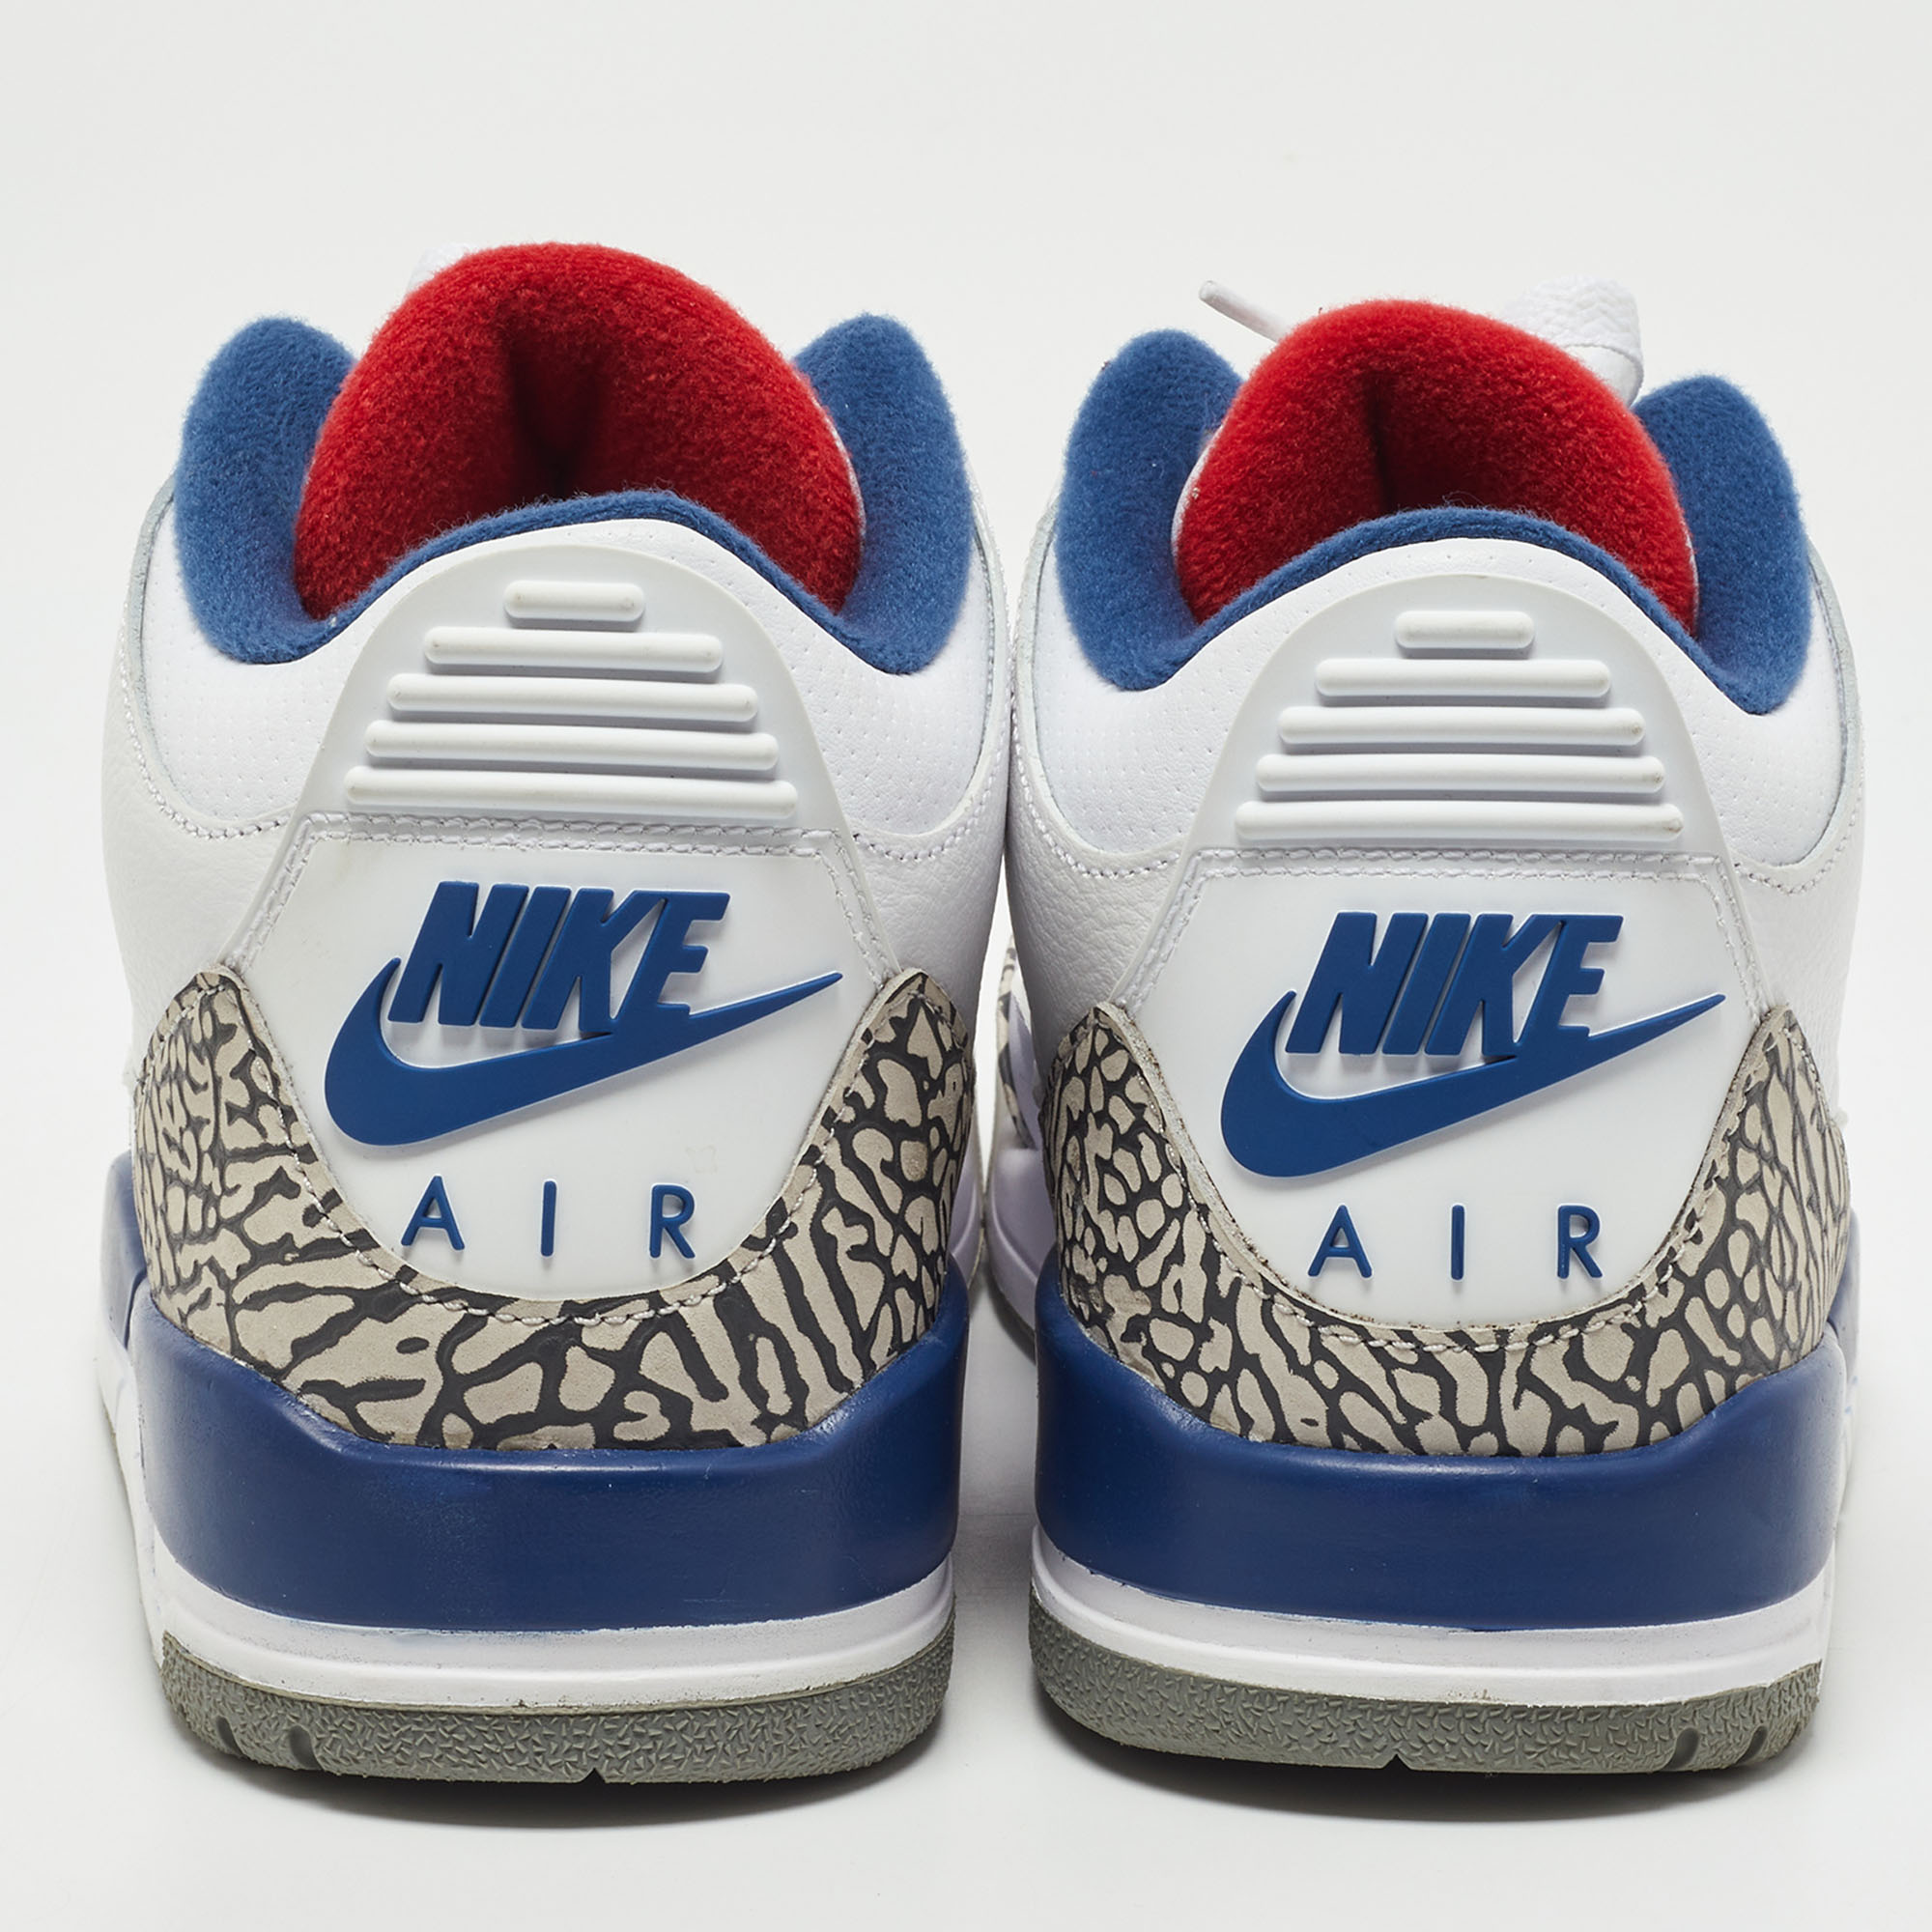 Air Jordans White/Blue Leather Jordan 3 Retro OG True Blue Sneakers Size 41